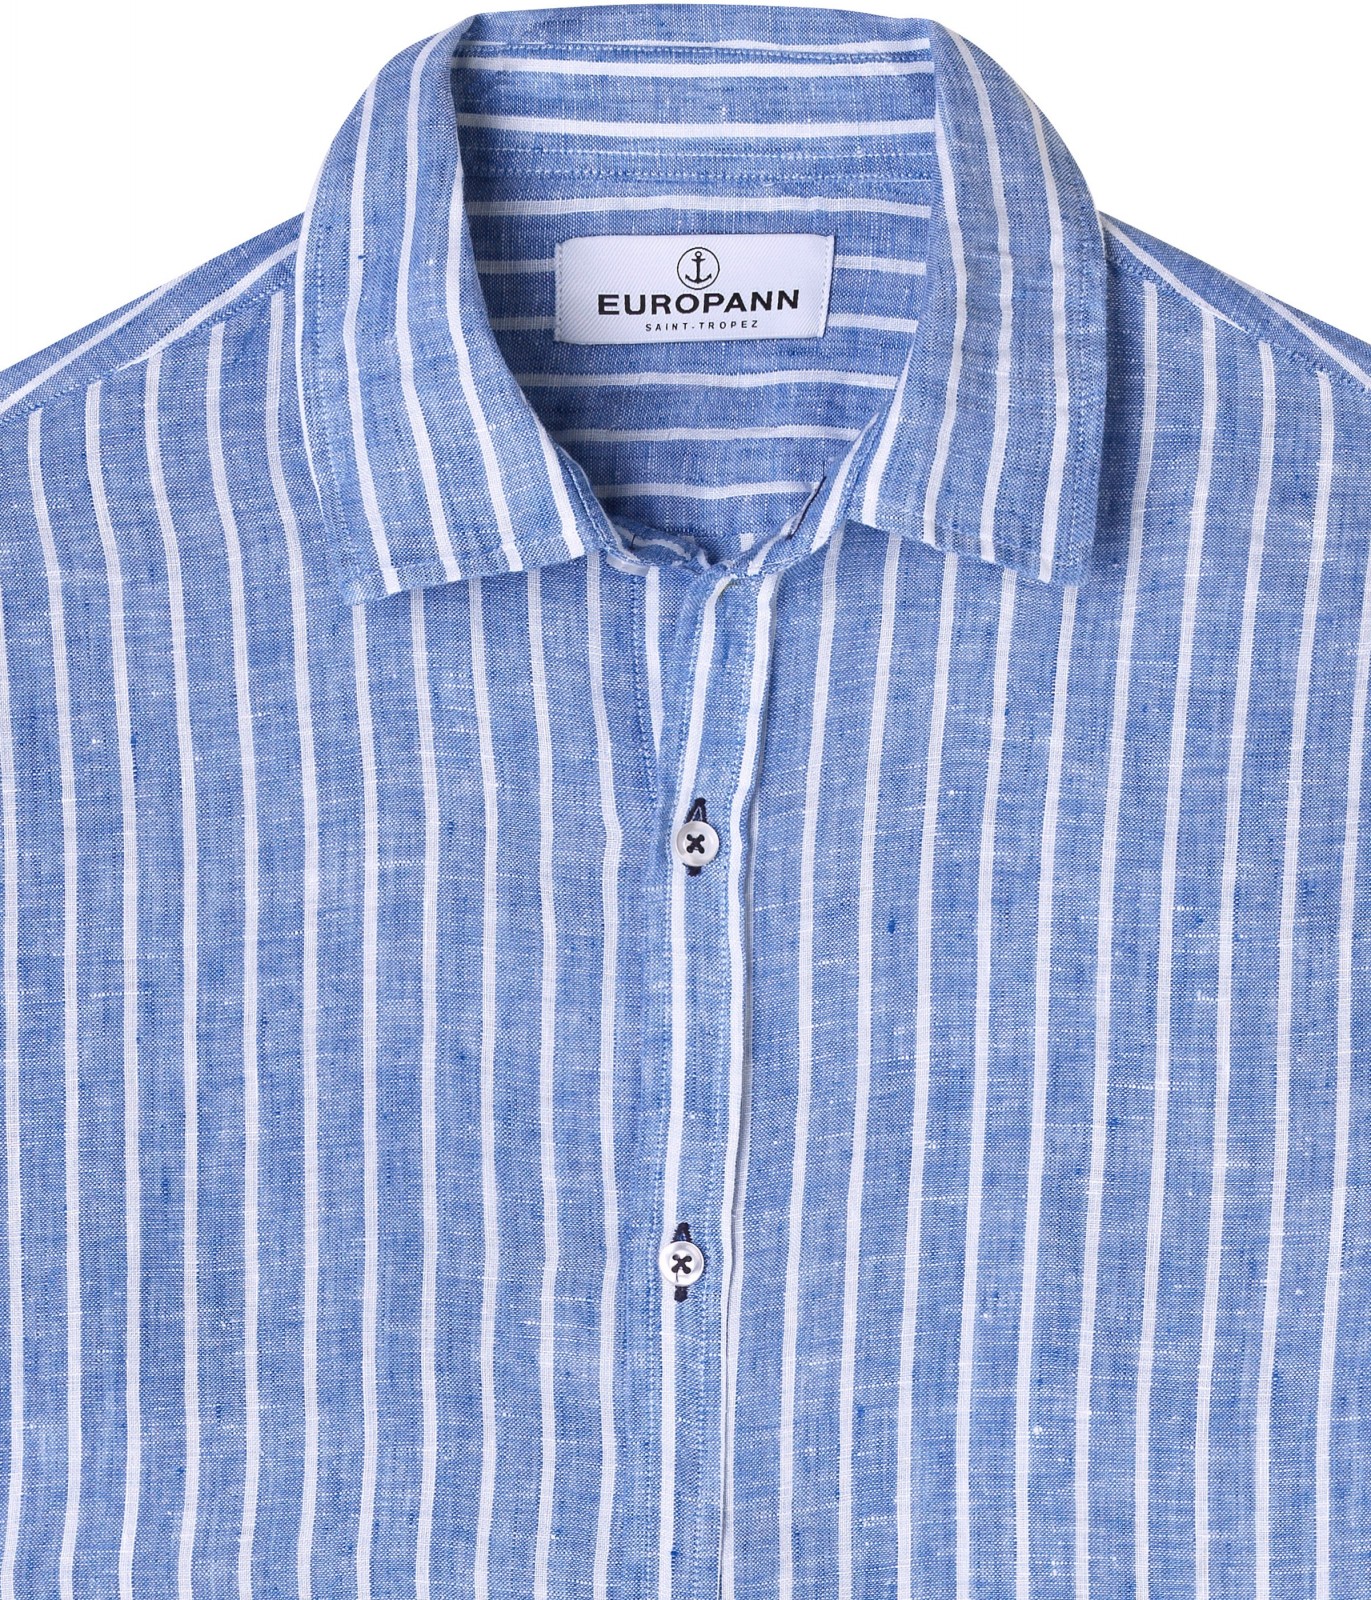 Men's striped blue linen shirt